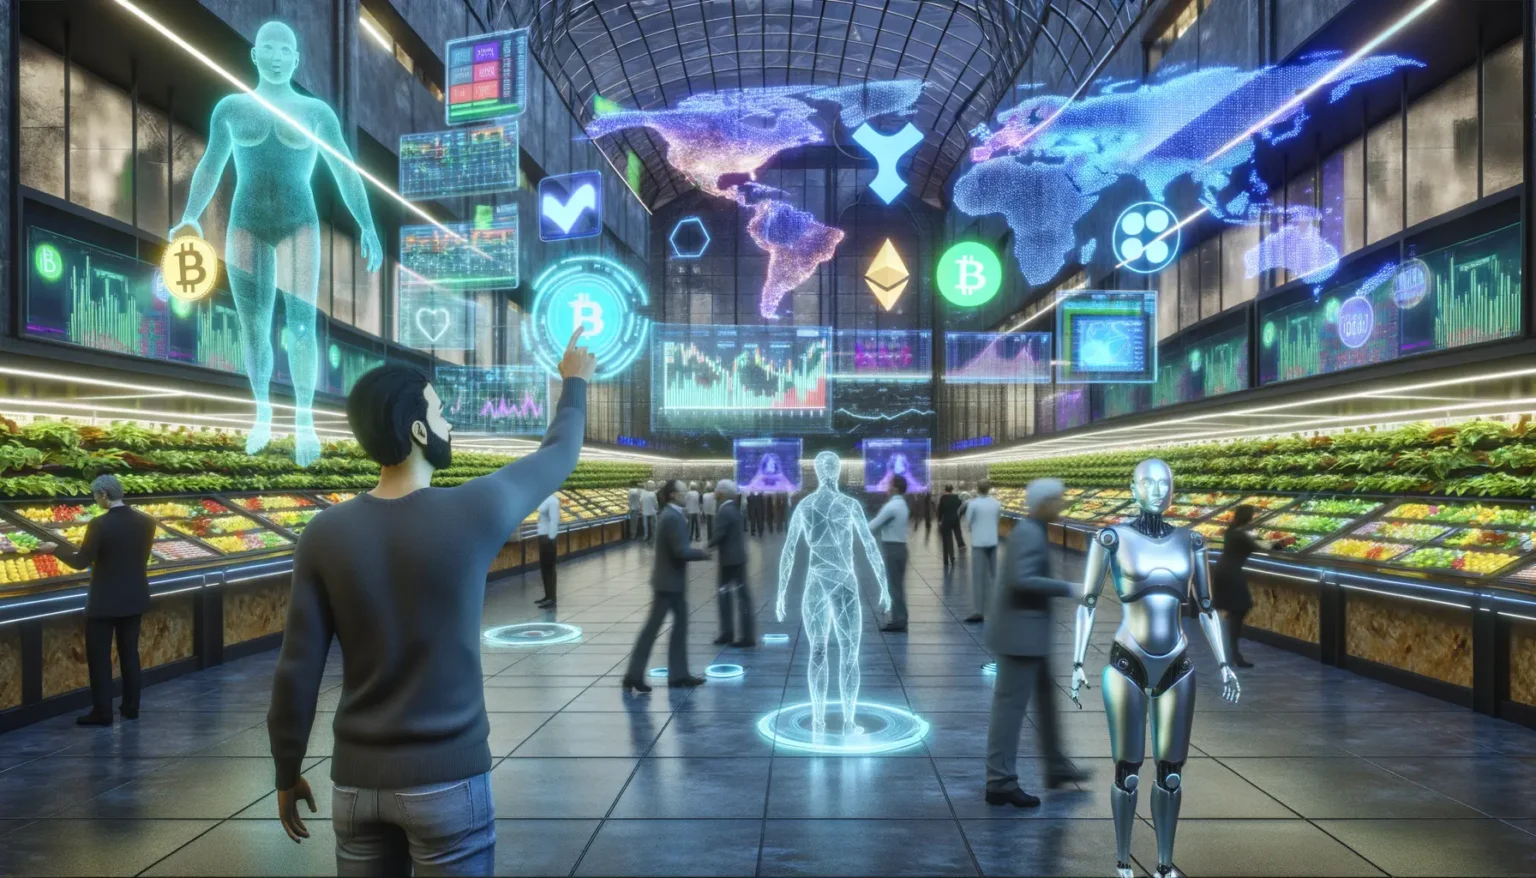 Futuristische Szene mit Menschen und humanoiden Robotern in einem Einkaufszentrum, das von digitalen Bildschirmen und holografischen Displays mit Kryptowährungs-Symbolen und Weltkarten umgeben ist. Im Vordergrund steht eine menschenähnliche Roboterfigur neben Obst- und Gemüsetheken, während ein Mann mit erhobenem Arm auf einen durchsichtigen holographischen Menschen zeigt.